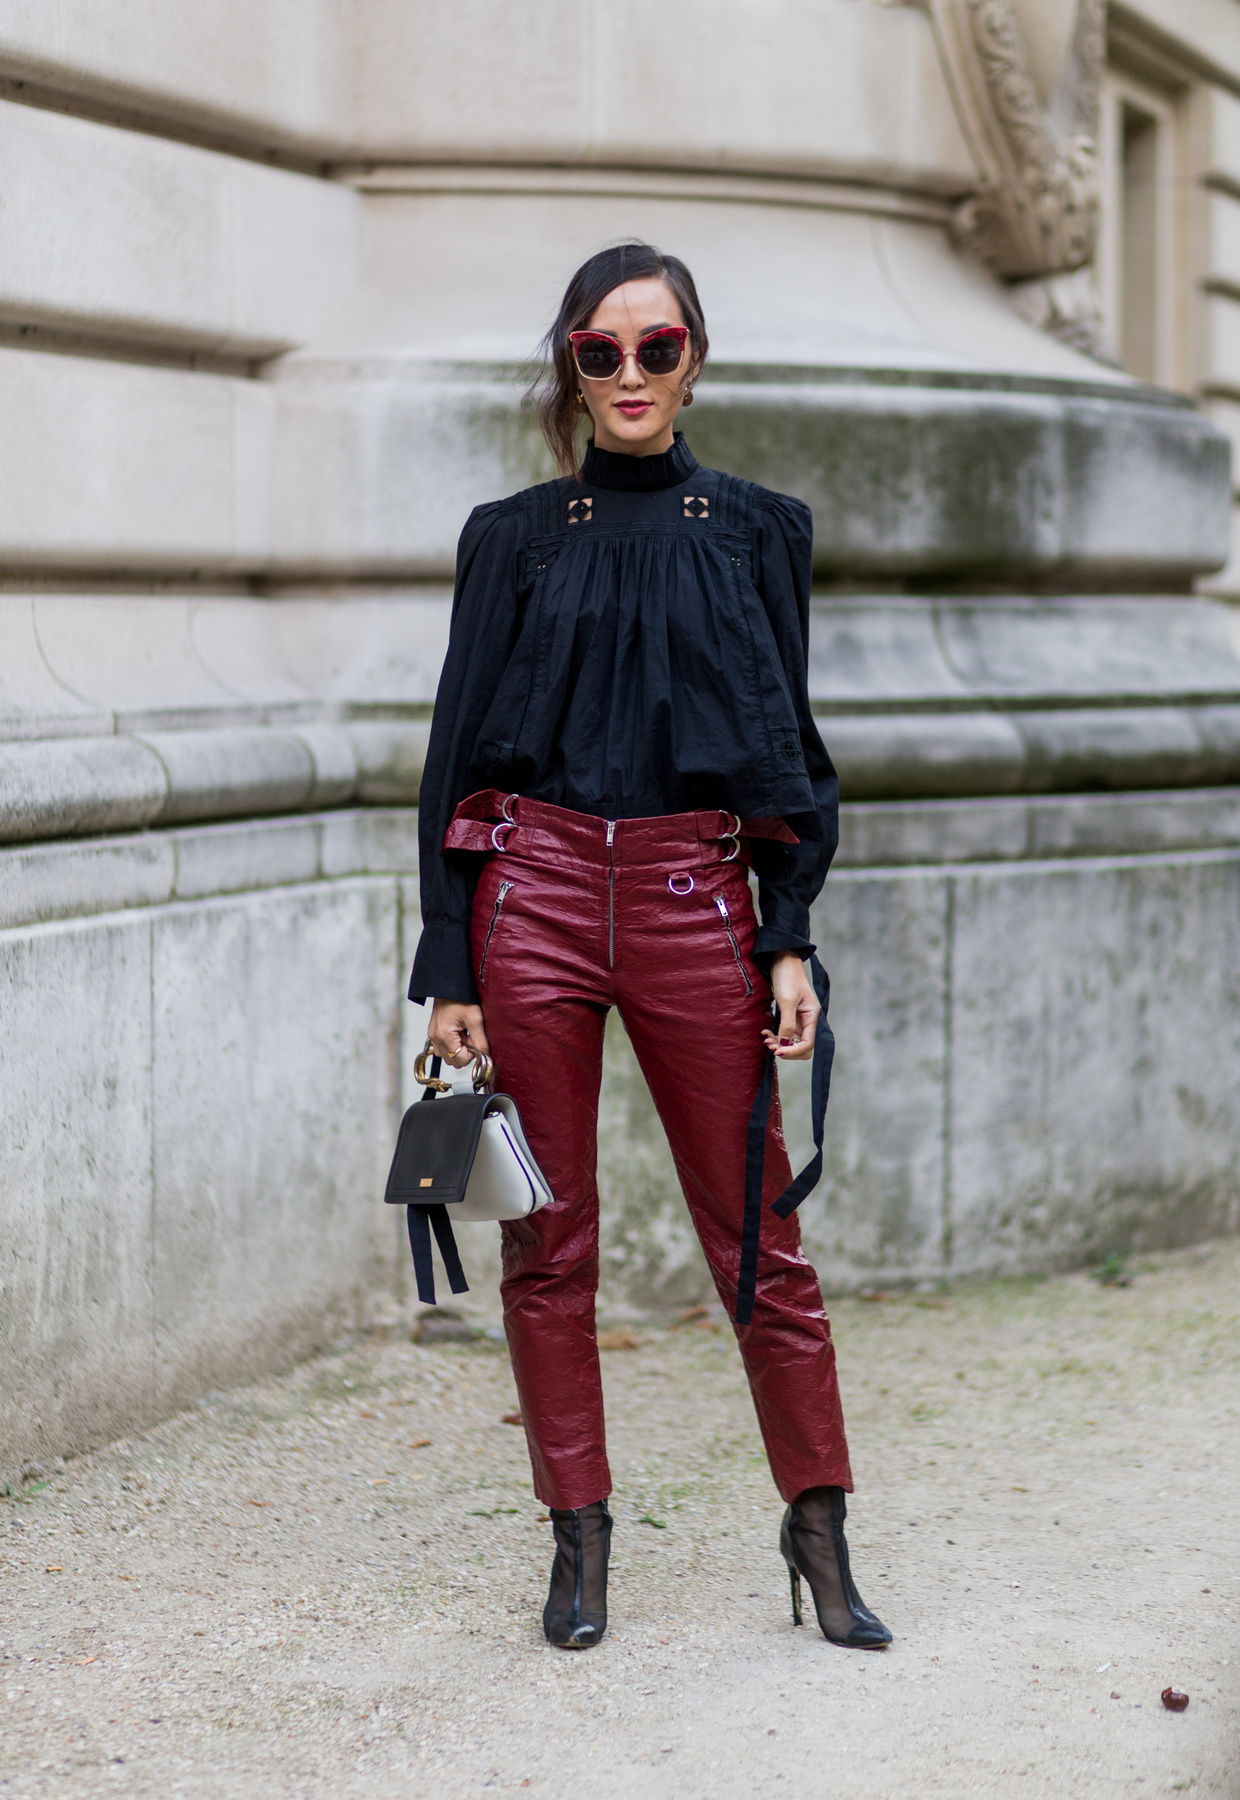 Chriselle Lim bordó bőrnadrággal kombinálta a fekete blúzt Párizsban.

